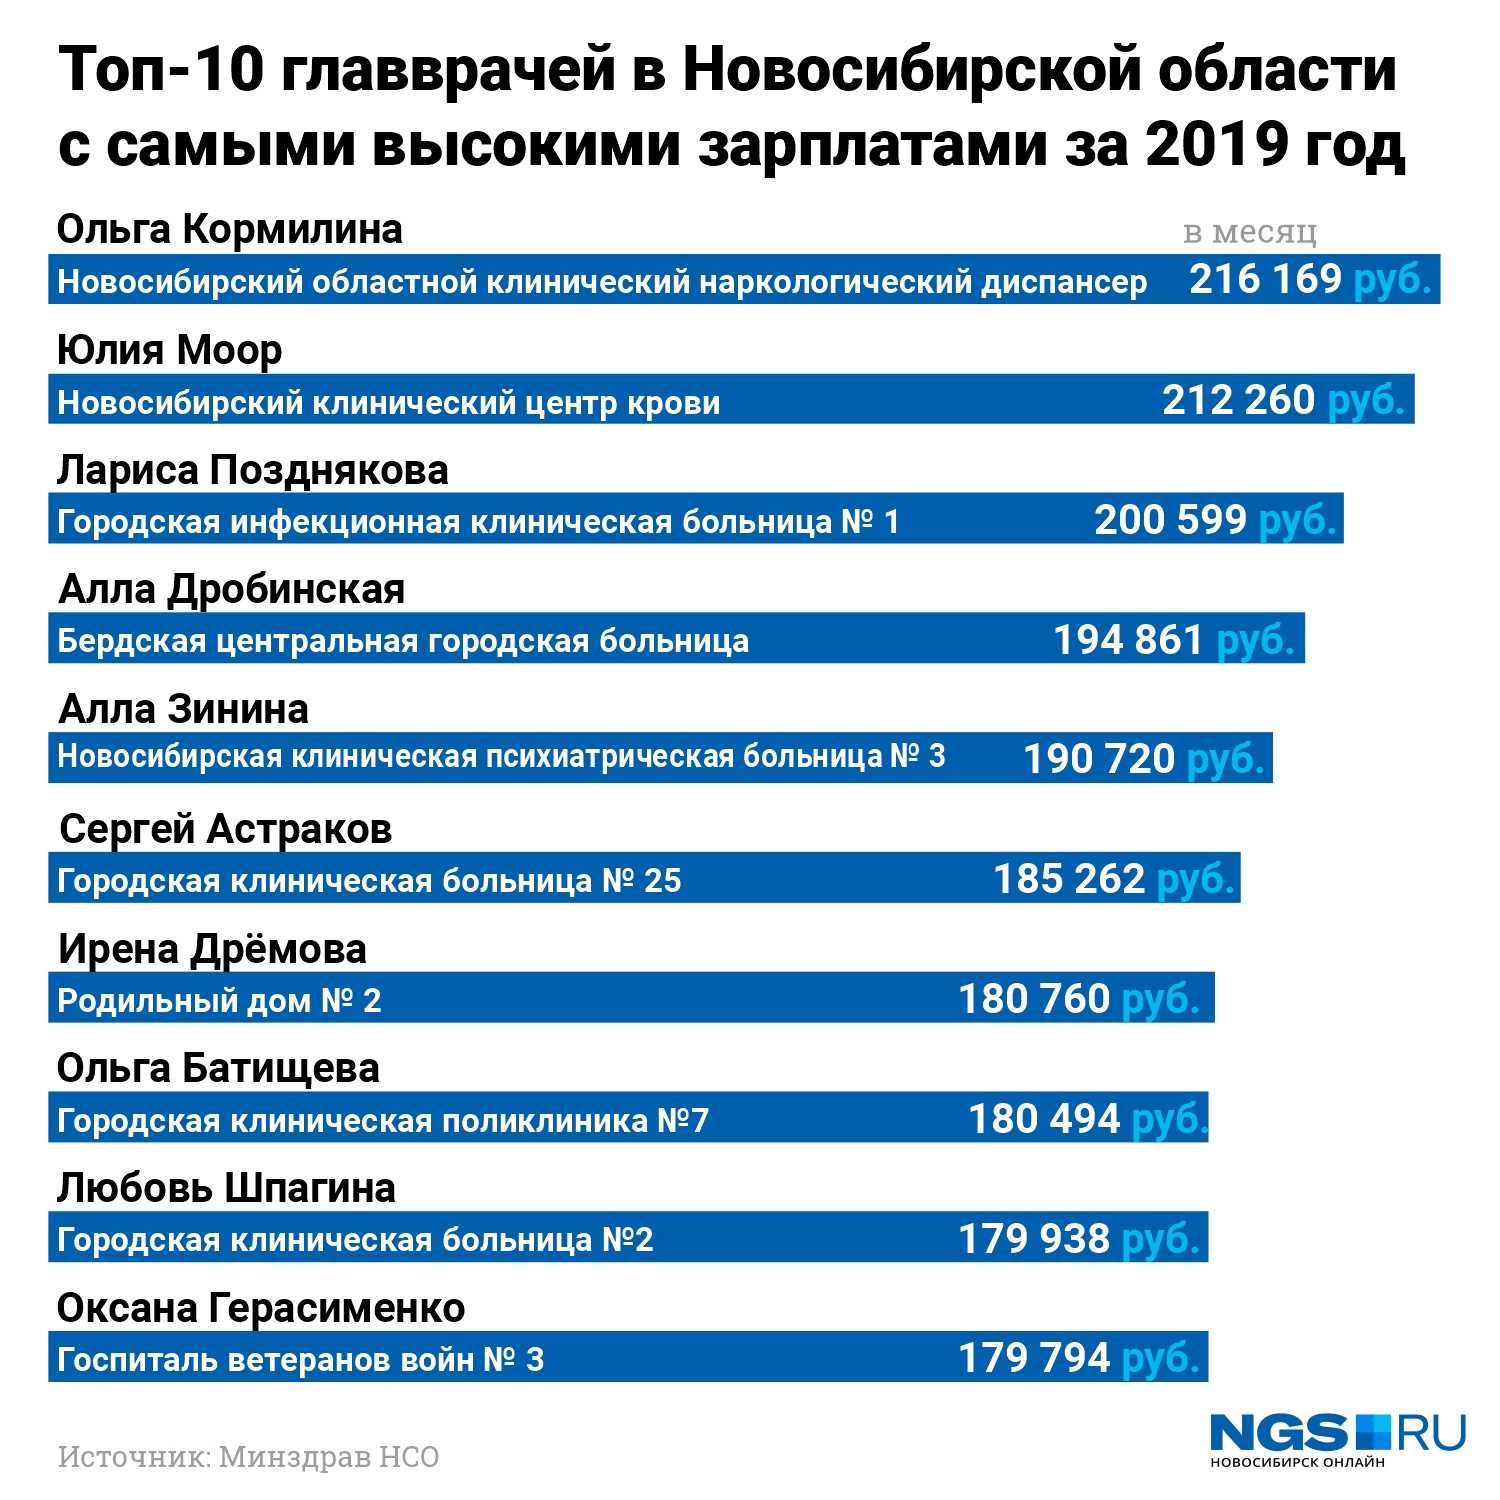 Нетрудно посчитать, что главврач областного наркодиспансера Ольга Кормилина (№ 1 в этом рейтинге) зарабатывает около 2,6 млн рублей в год